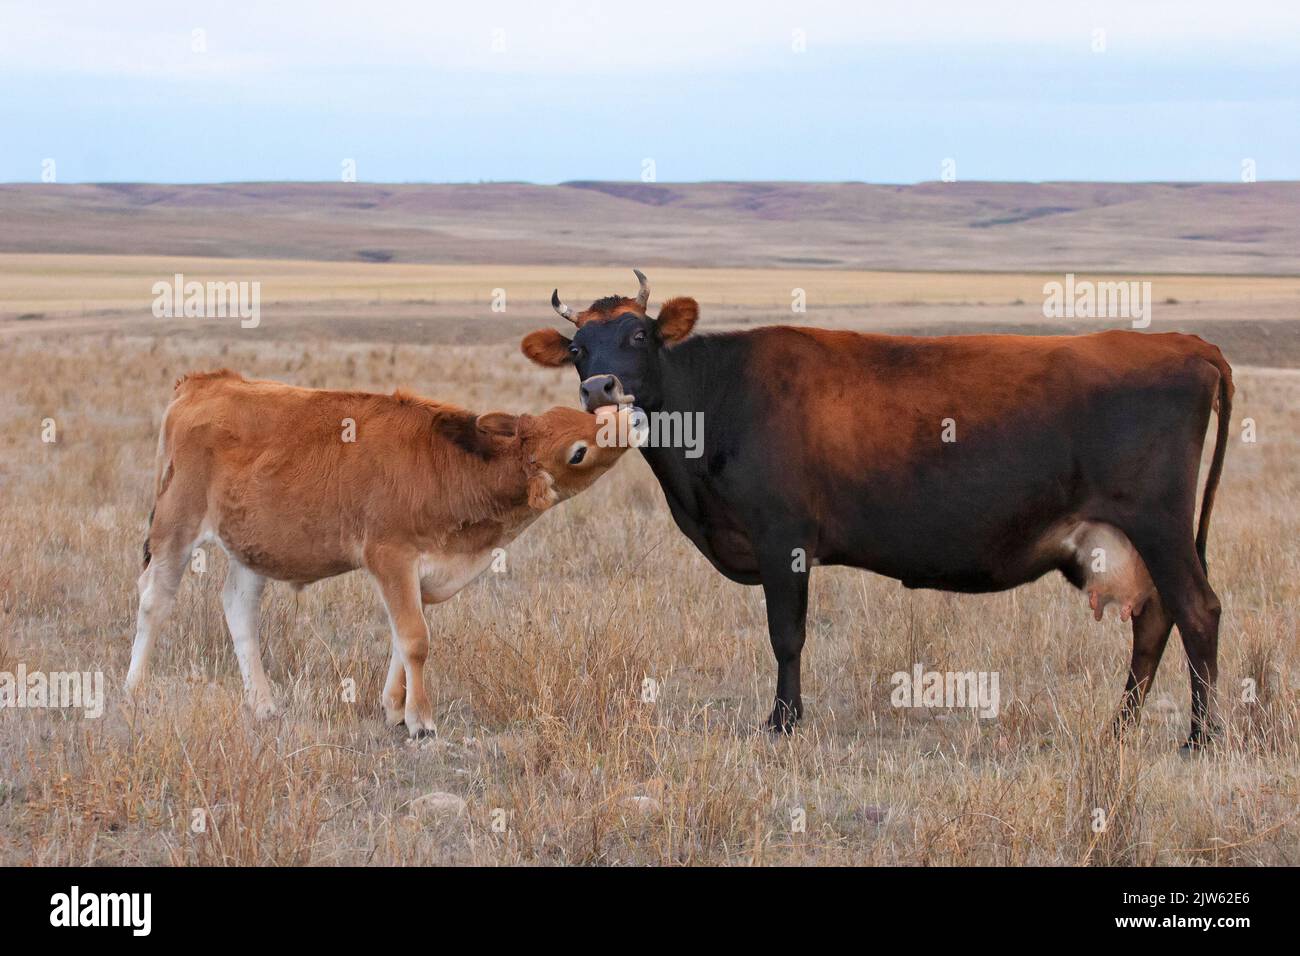 Madre de vaca de Jersey arreglando su pantorrilla, lamiéndose su cara, al aire libre en pastizales en una granja cerca de Eastend, Saskatchewan, Canadá Foto de stock